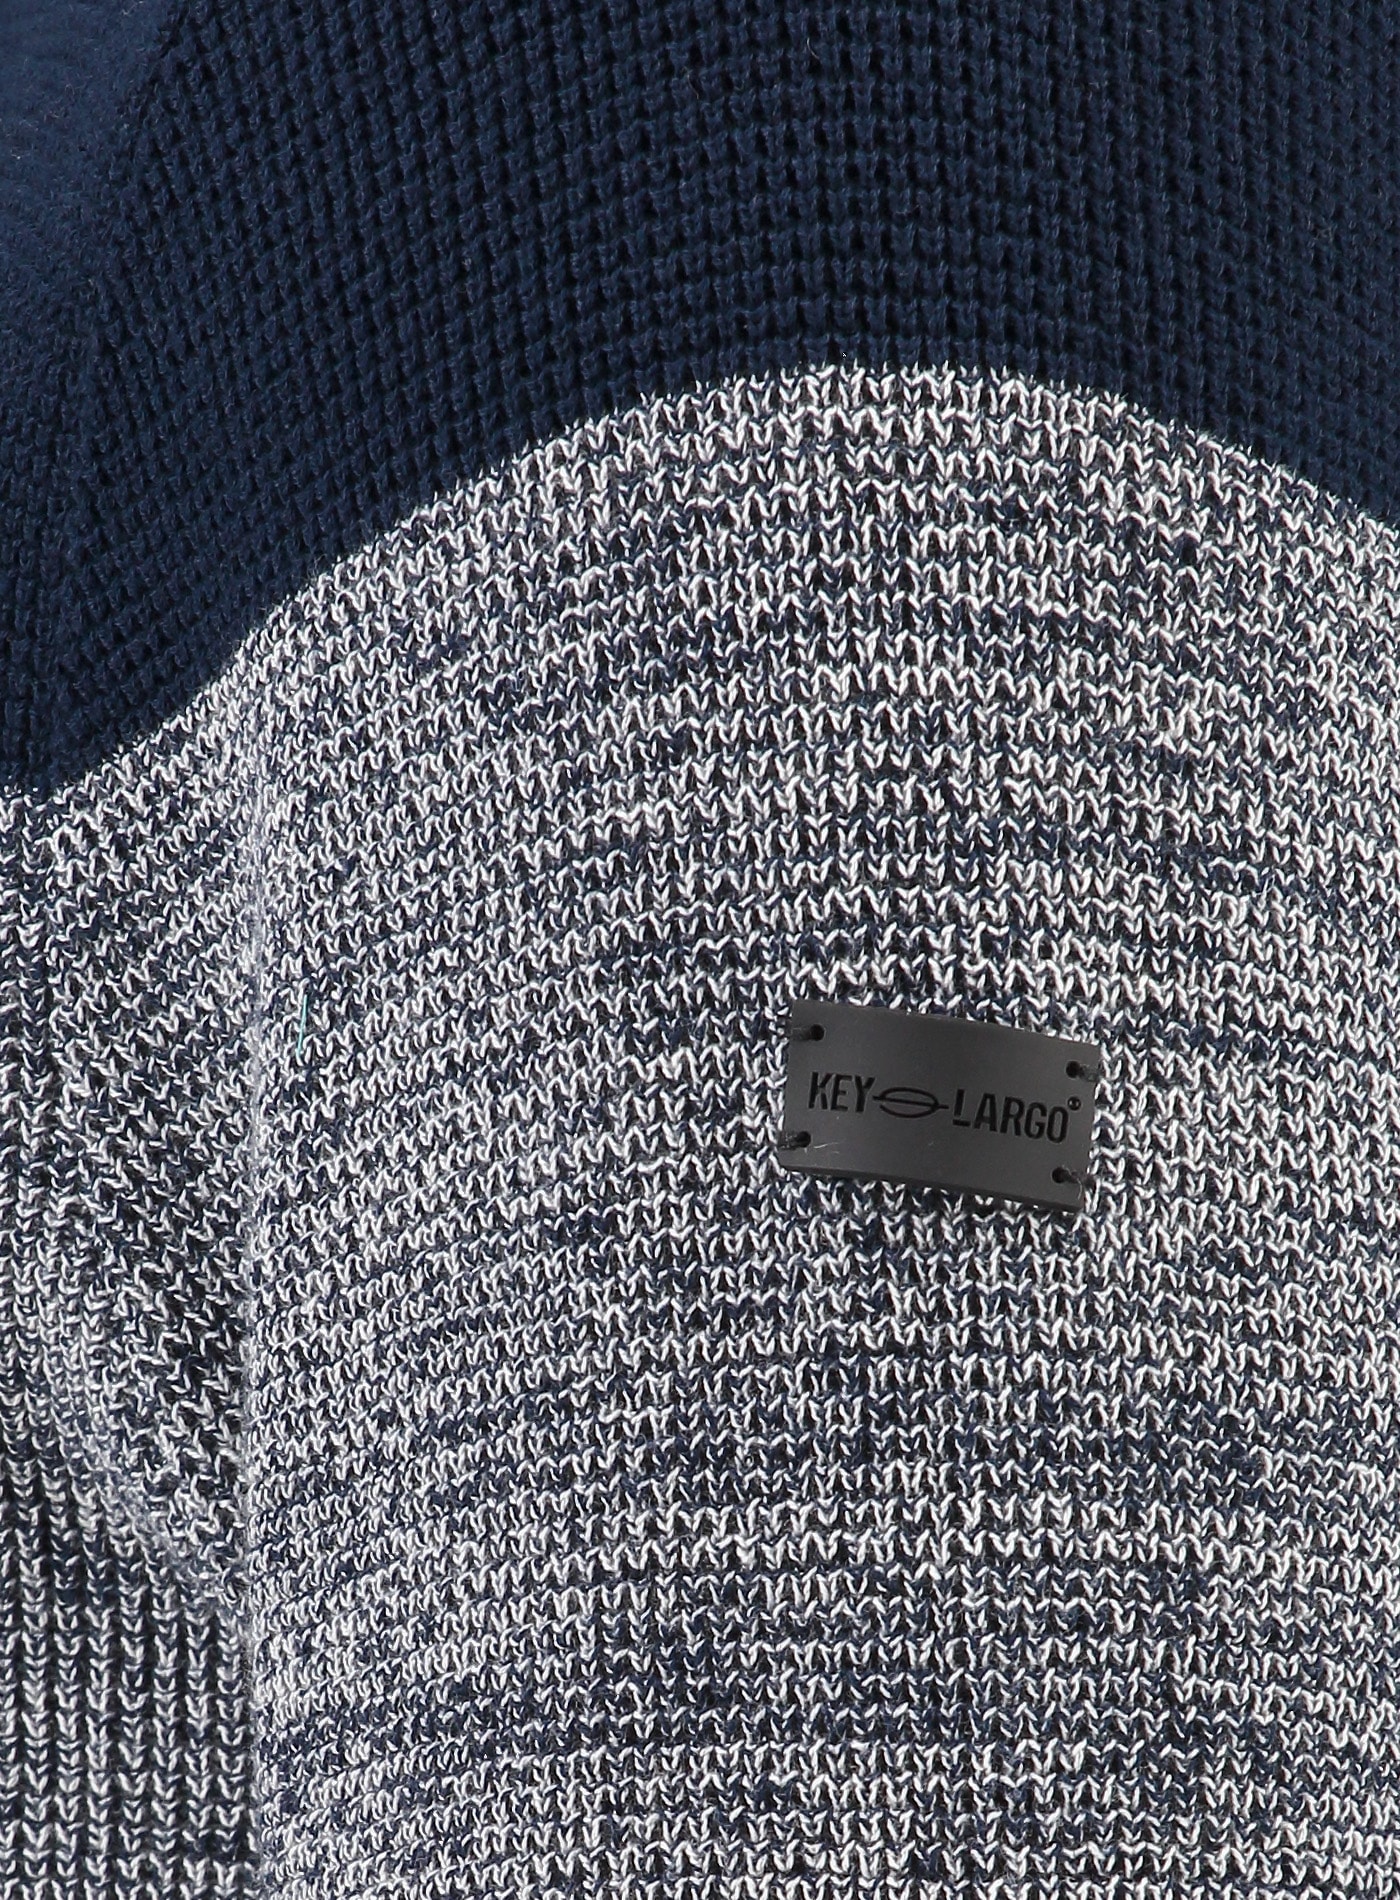 Key Largo Kapuzensweatshirt, mit breiten Streifen